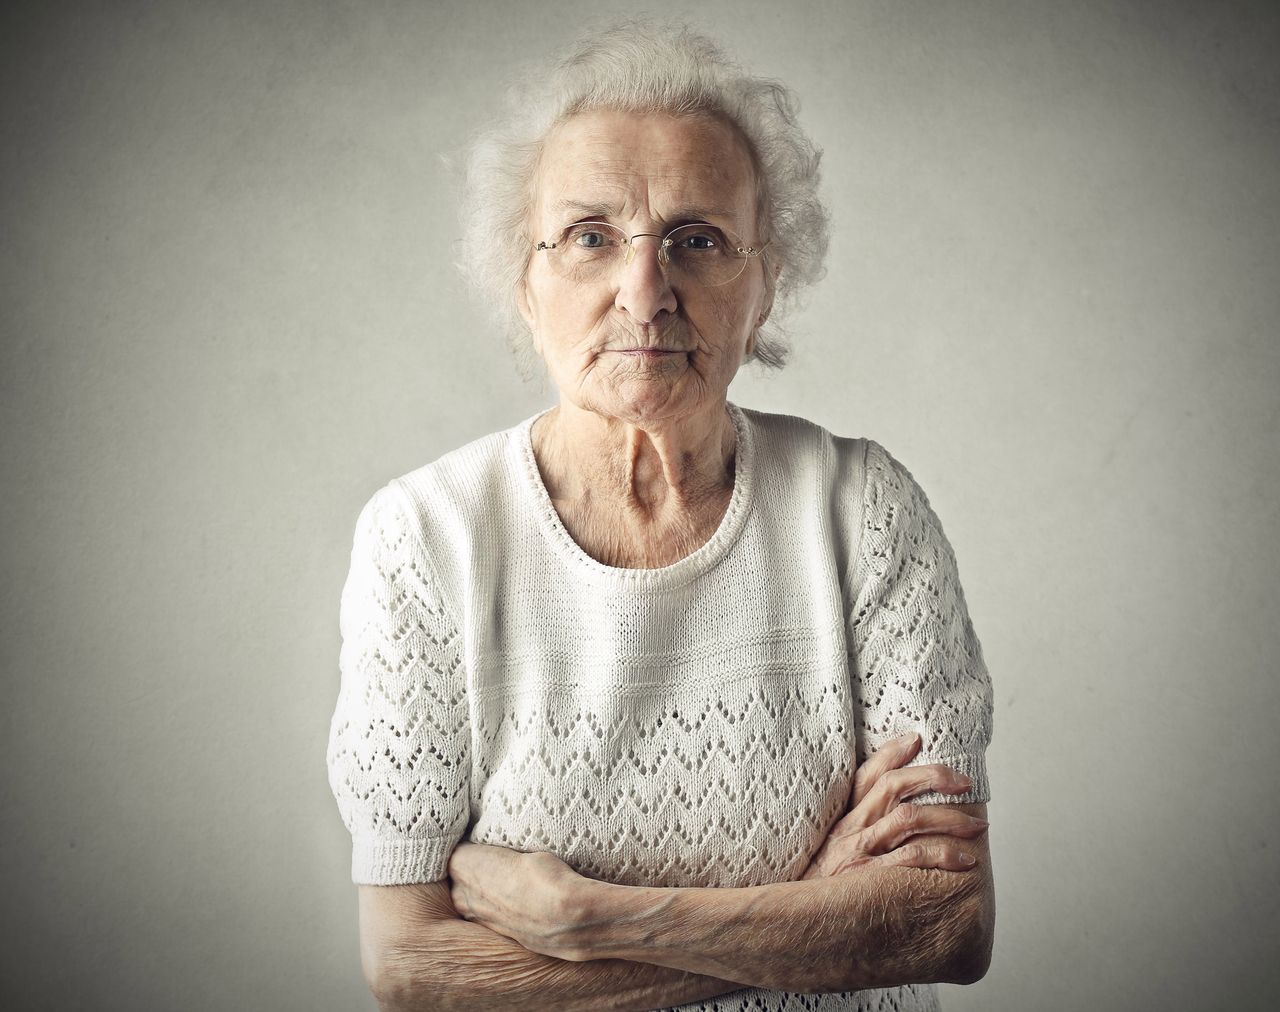 Dziadkowie, którzy opiekują się wnukami, żyją dłużej. Tylko czy zawsze mają wybór?